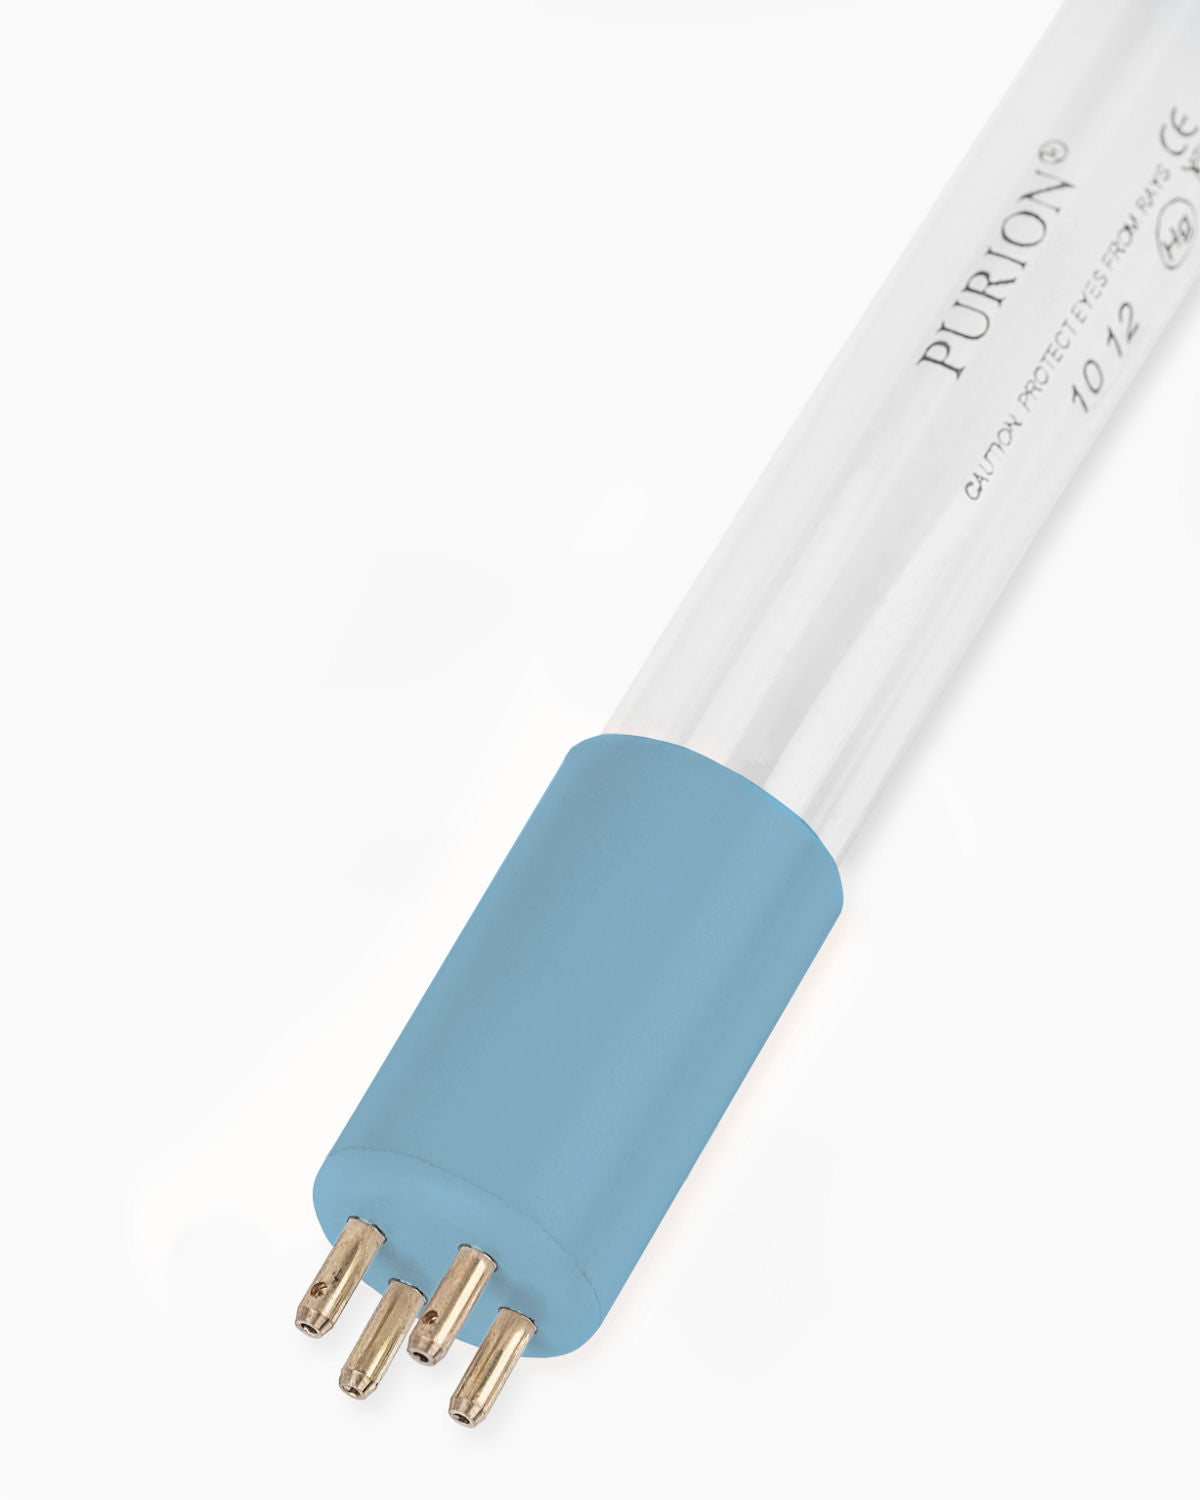 Eine blaue PURION 2501 PVC-U Basic-Lichtröhre auf weißem Hintergrund. Marke: PURION GmbH